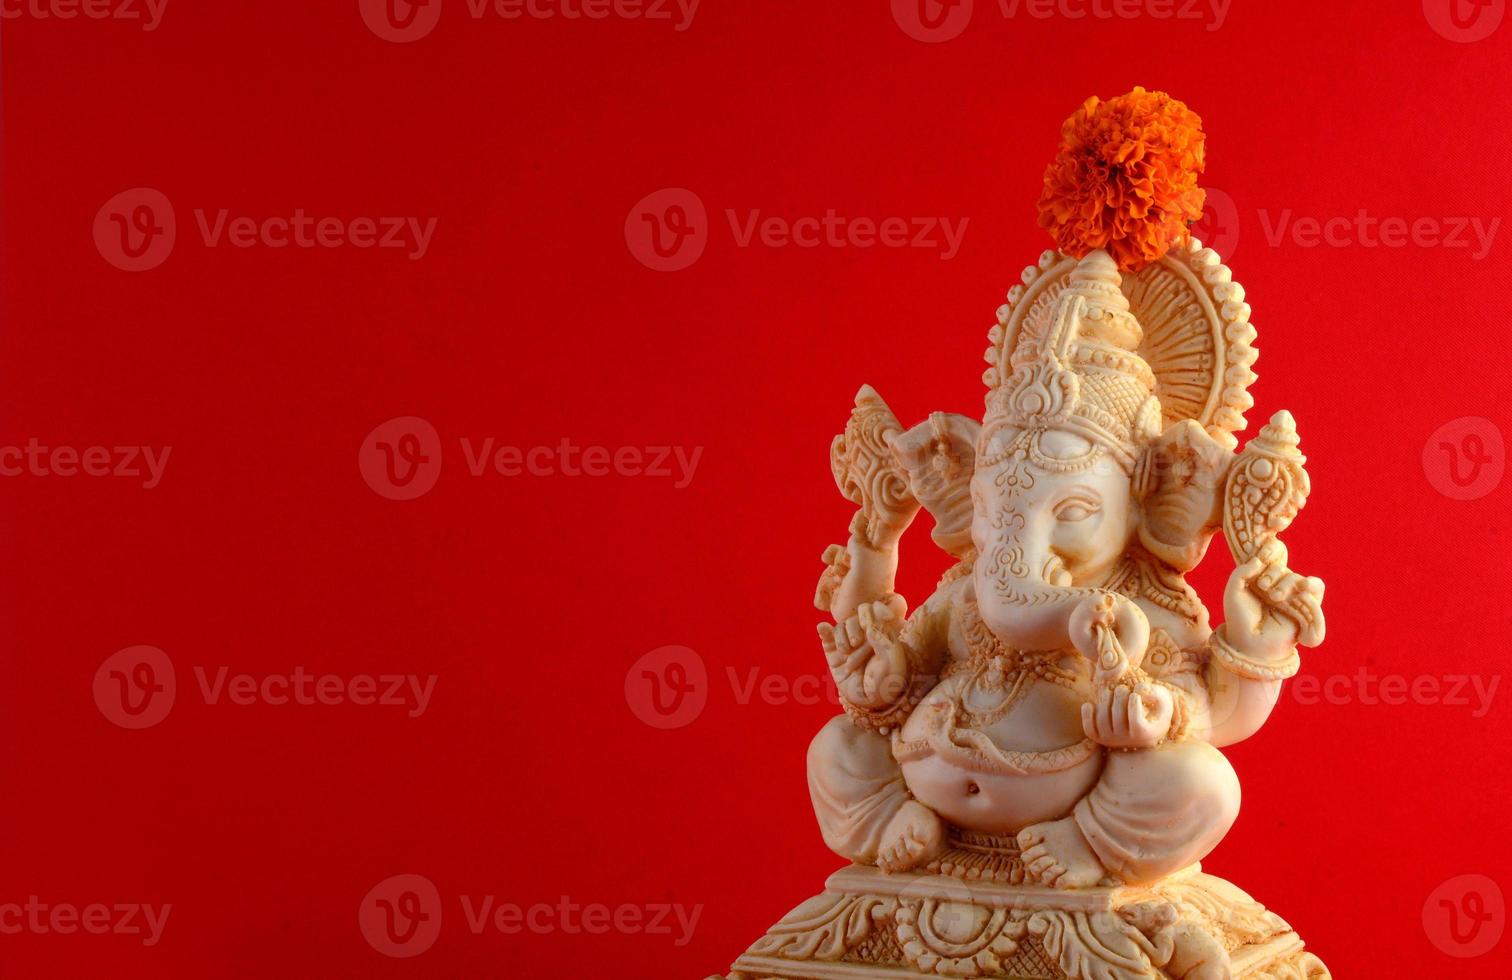 dios hindú ganesha. ídolo de ganesha sobre fondo rojo foto